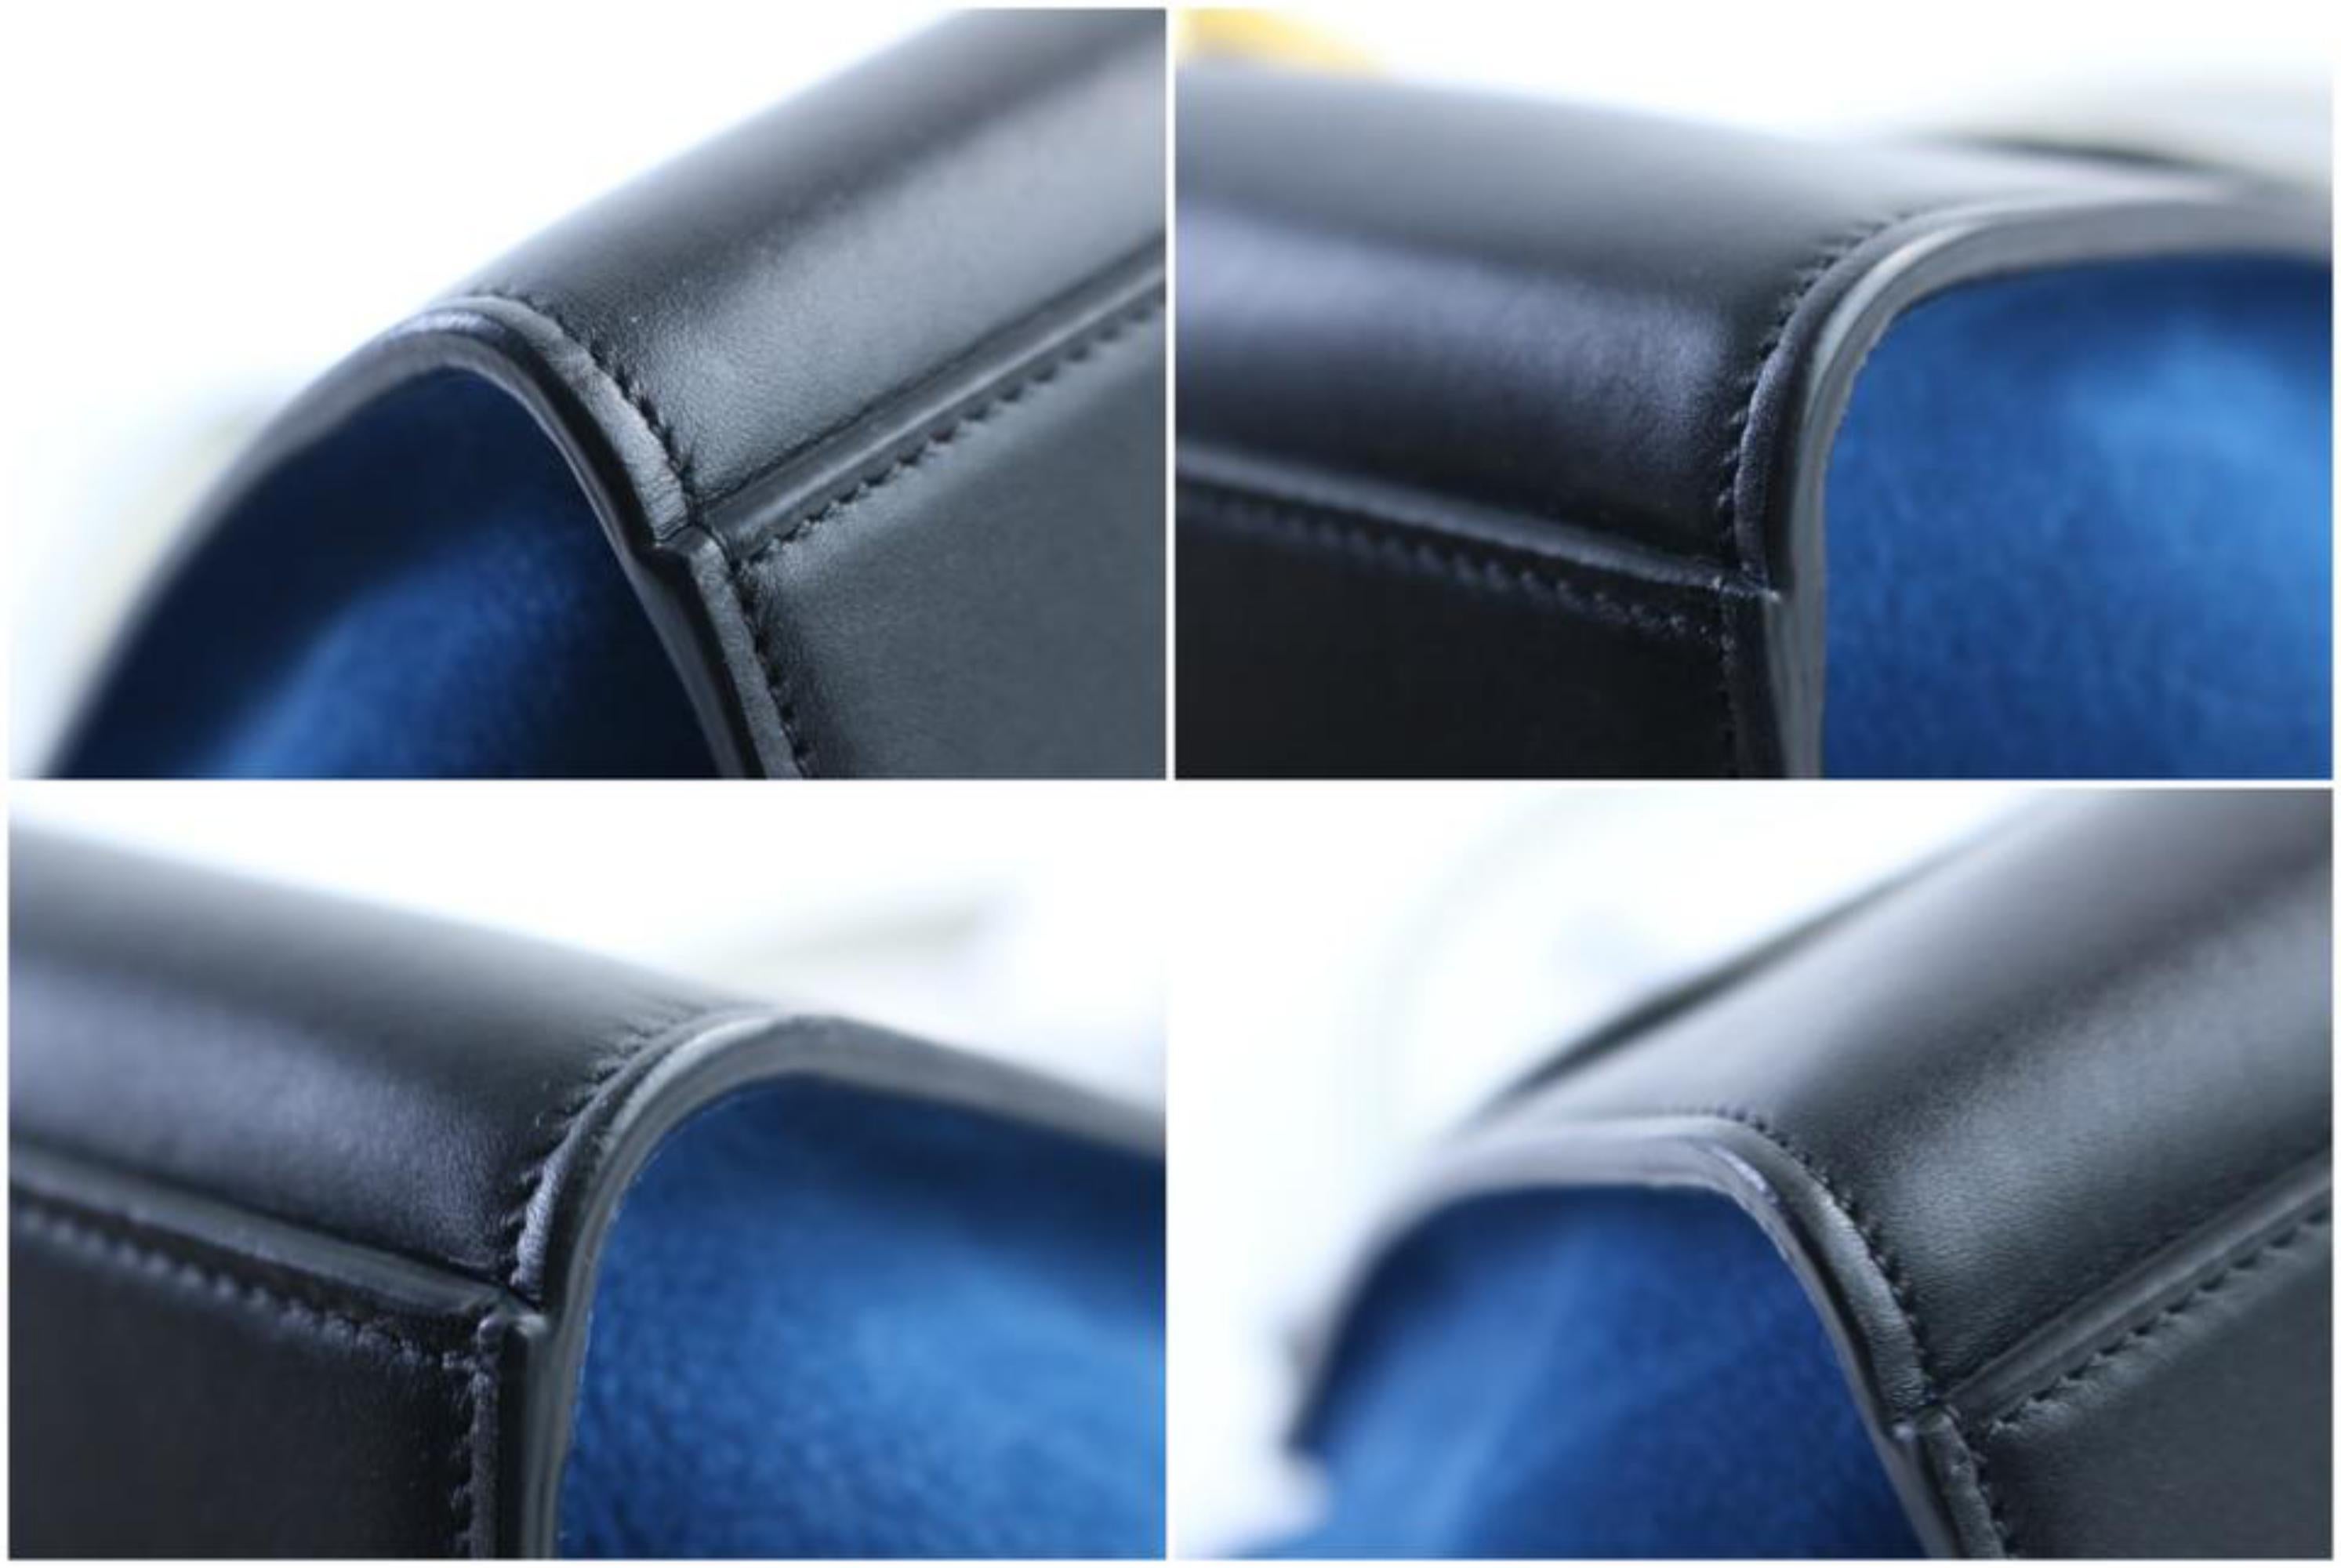 Céline Trapeze Tri-color 2way 30cer0501 Multicolor Suede Leather Cross Body Bag For Sale 6